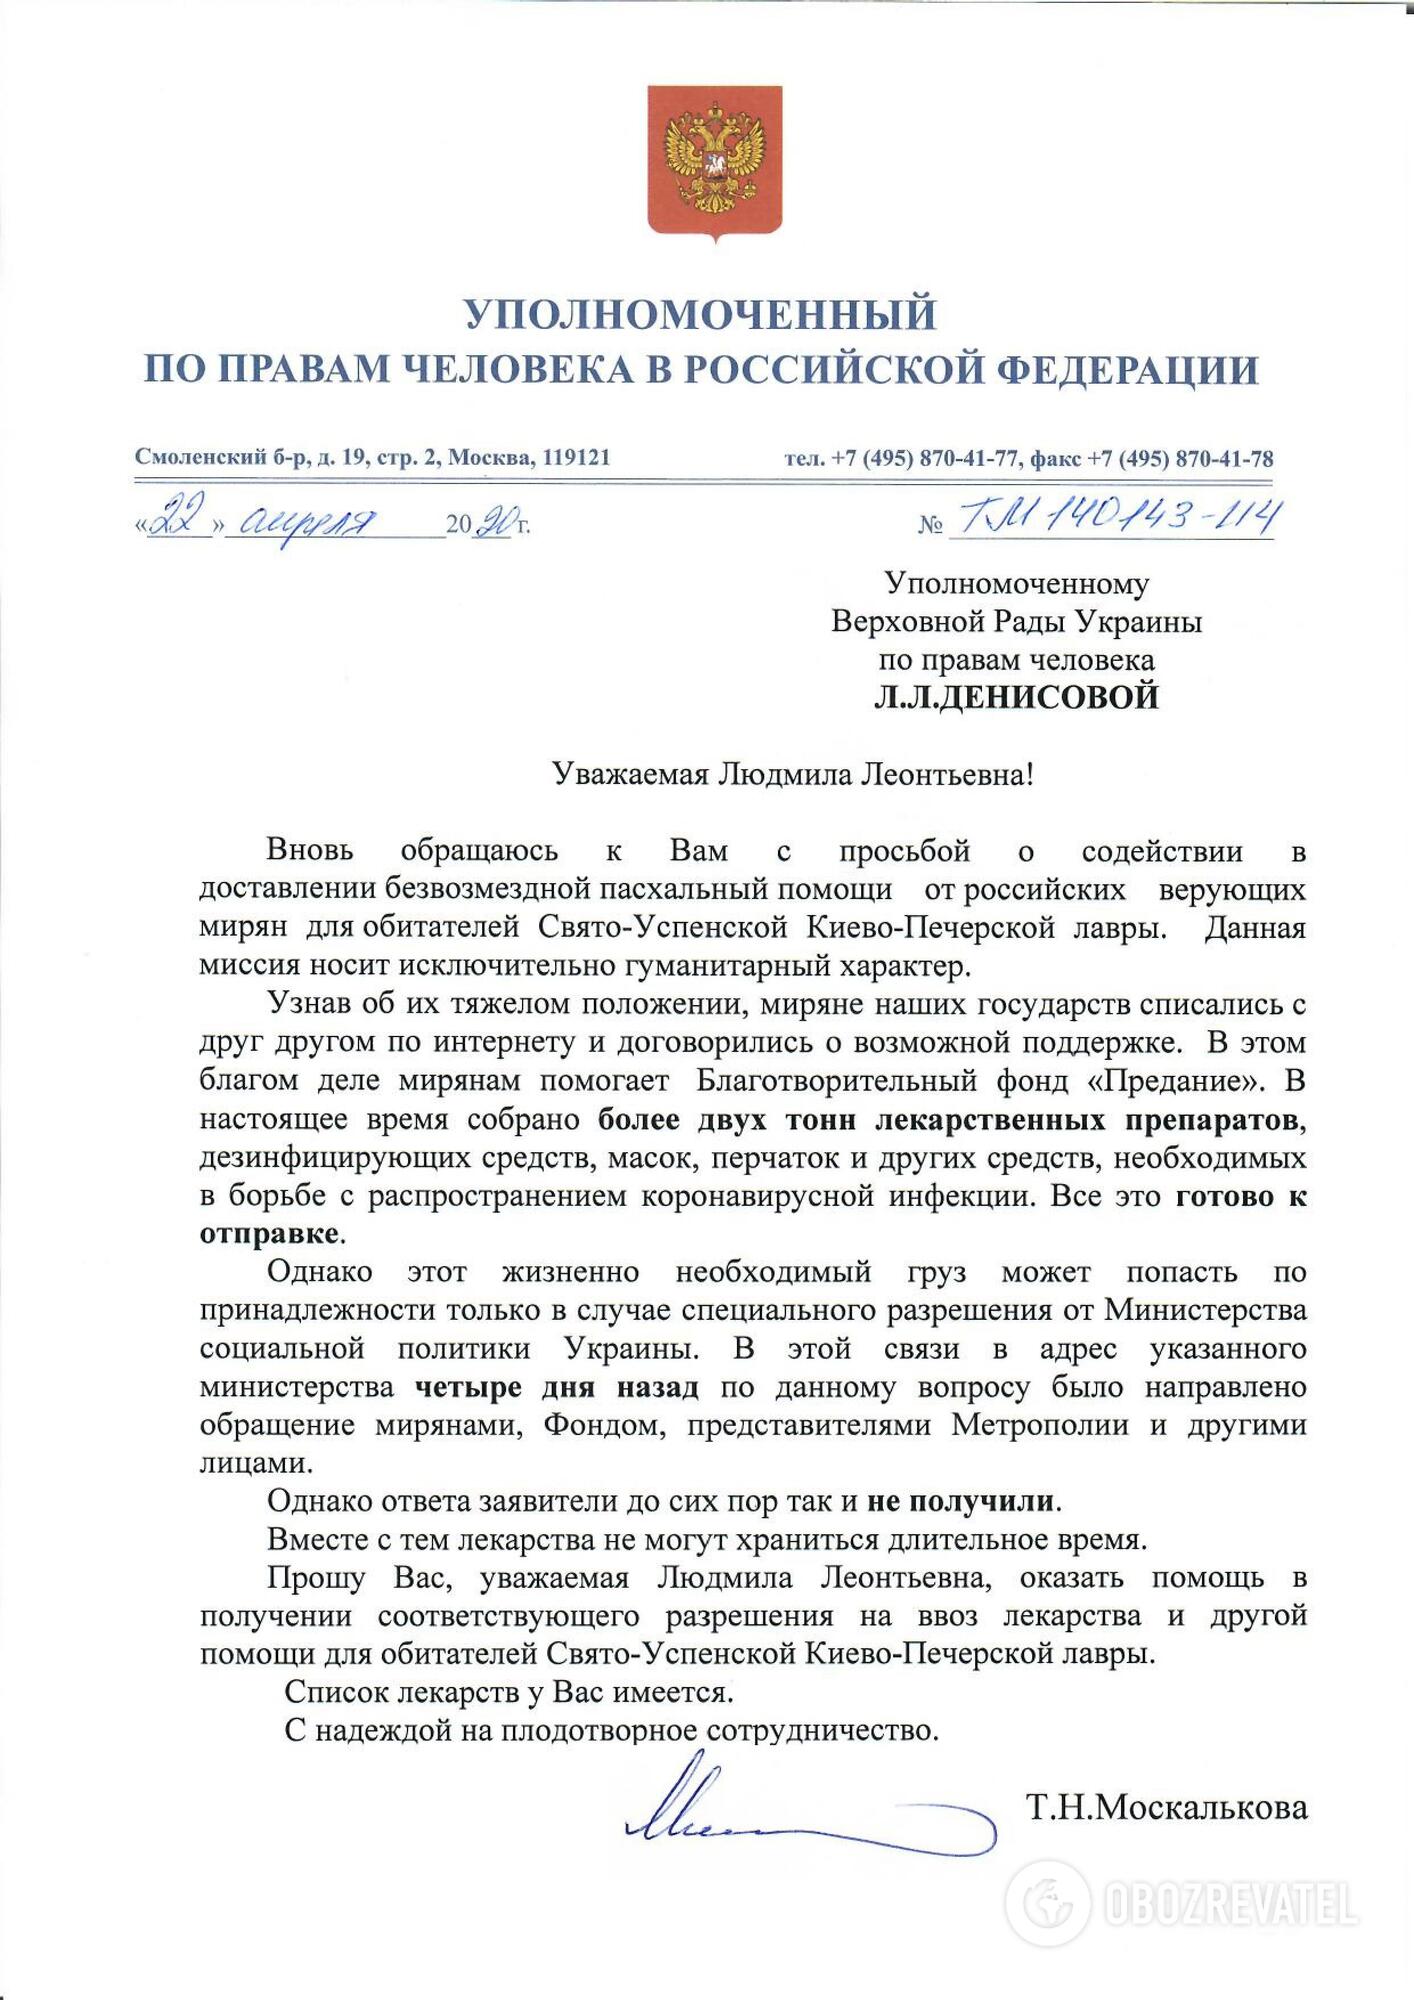 Москва просит пустить гуманитарный груз в Киево-Печерскую лавру: появился документ